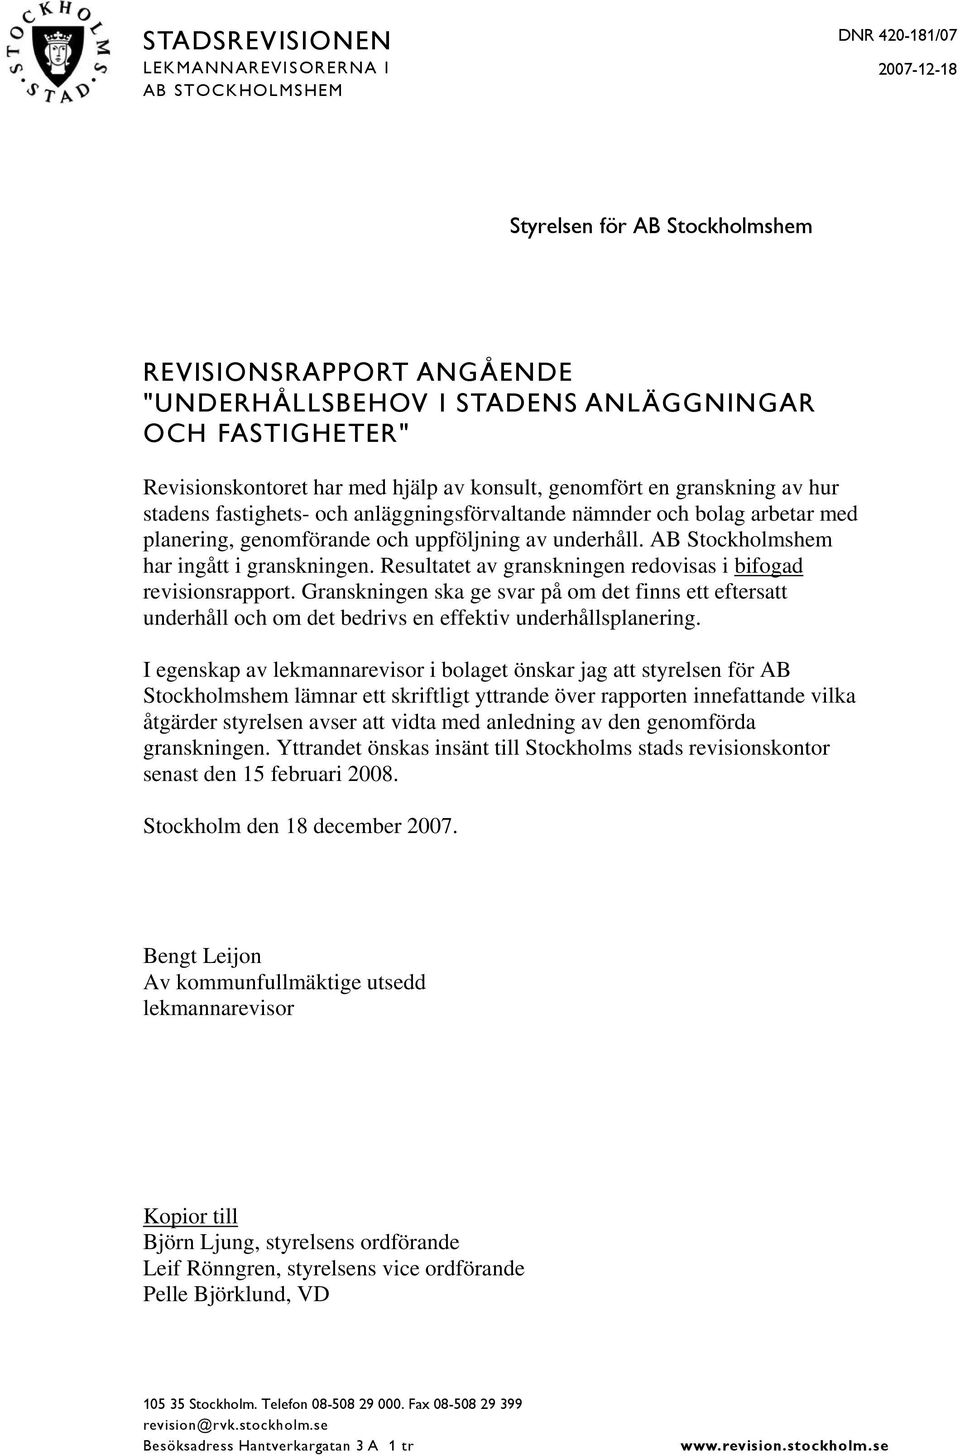 underhåll. AB Stockholmshem har ingått i granskningen. Resultatet av granskningen redovisas i bifogad revisionsrapport.